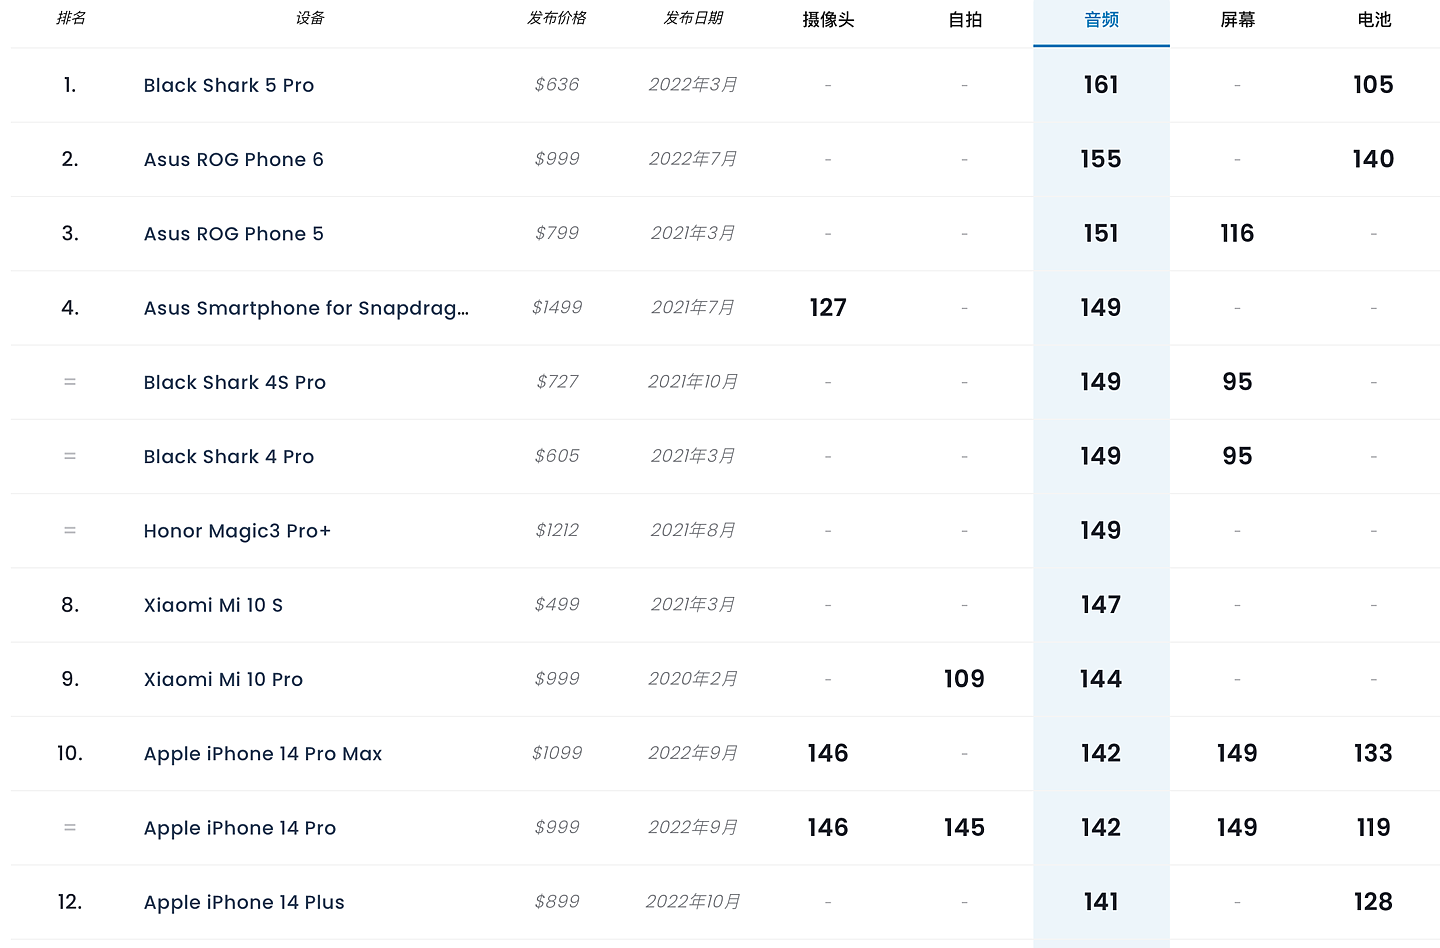 苹果 iPhone 14 Plus DXOMARK 音频测试得分 141，排名第 12 - 2